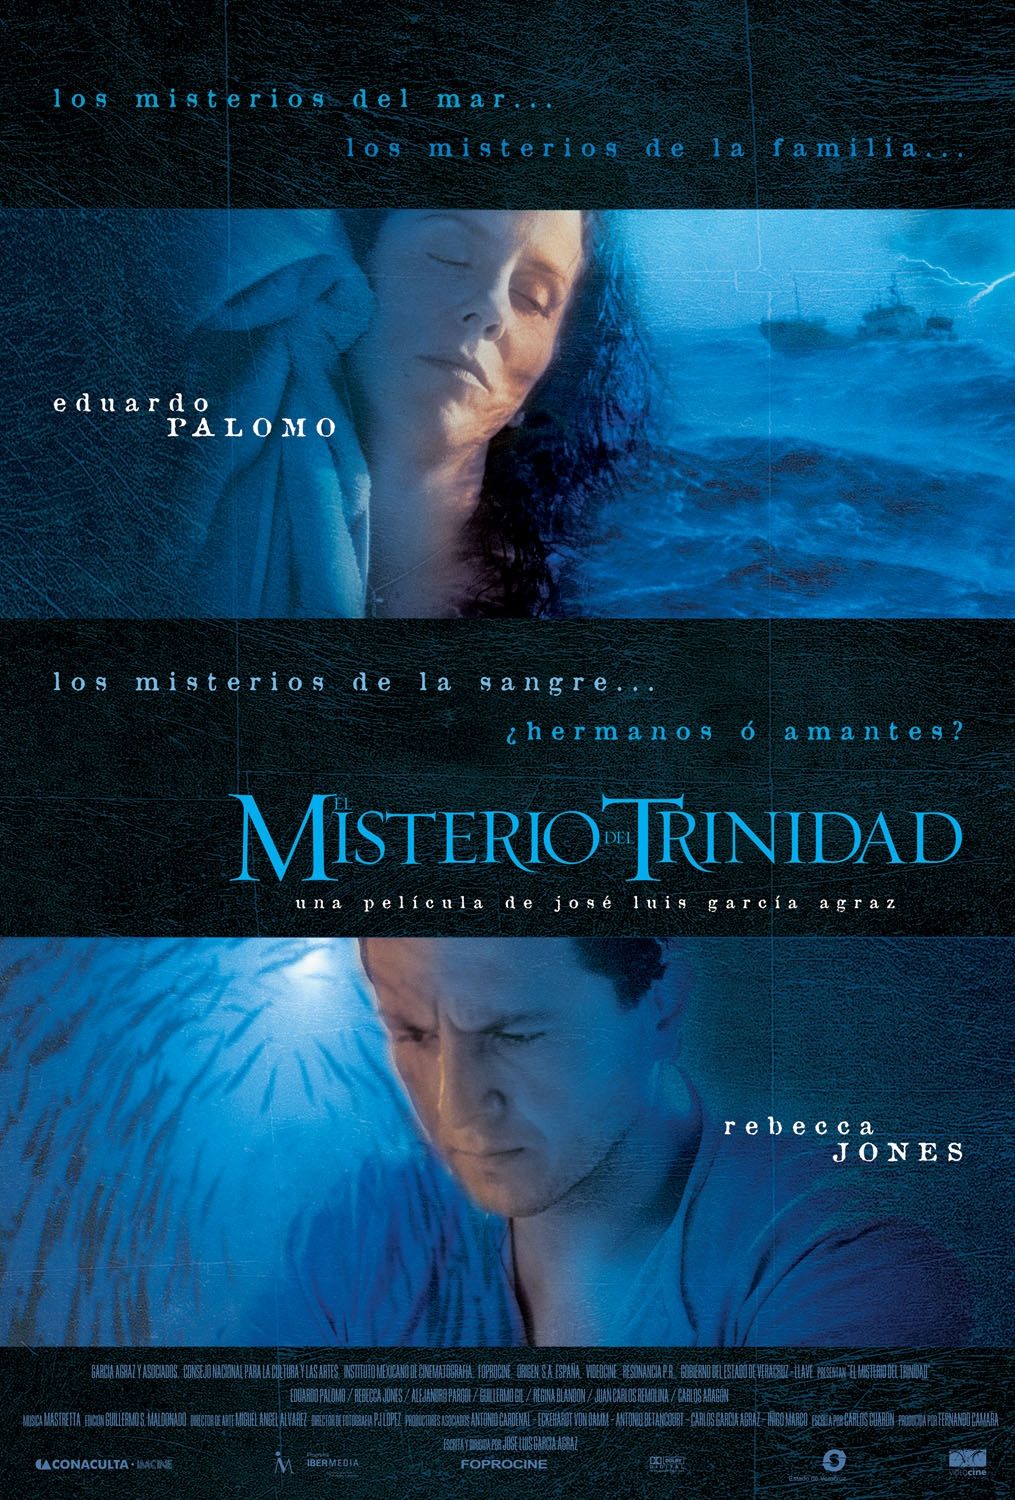 Extra Large Movie Poster Image for El misterio del Trinidad 